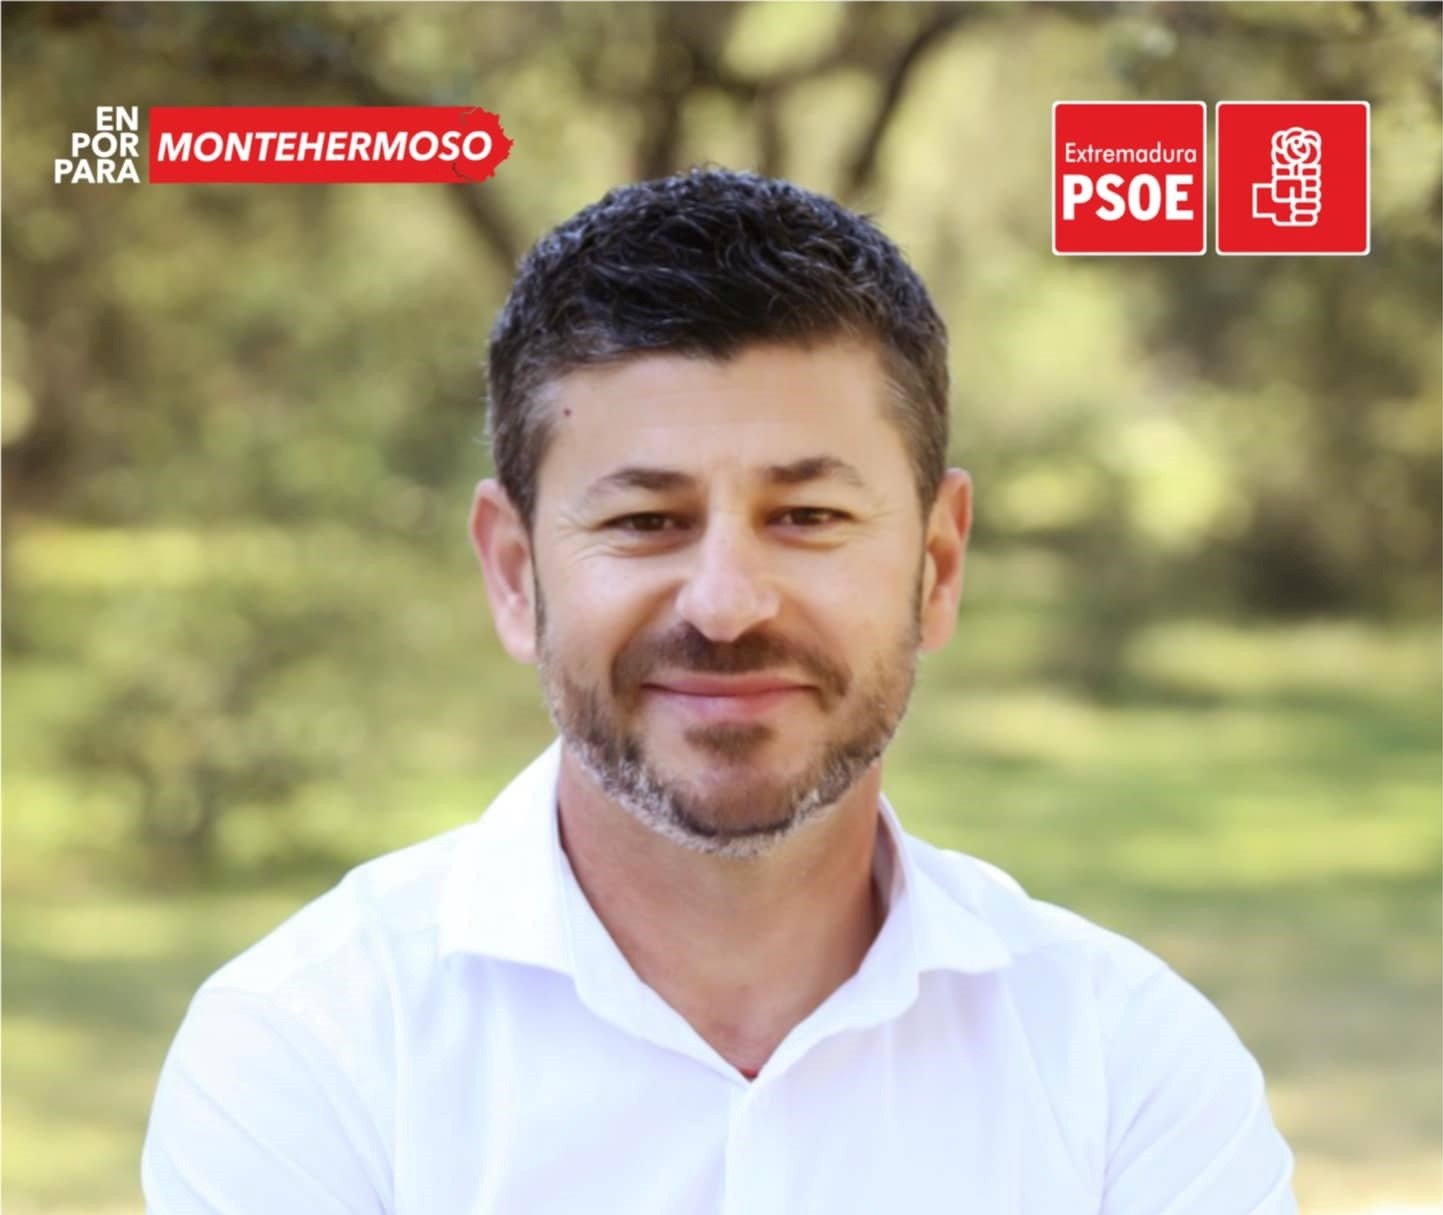 Comunicado del candidato del PSOE en Montehermoso